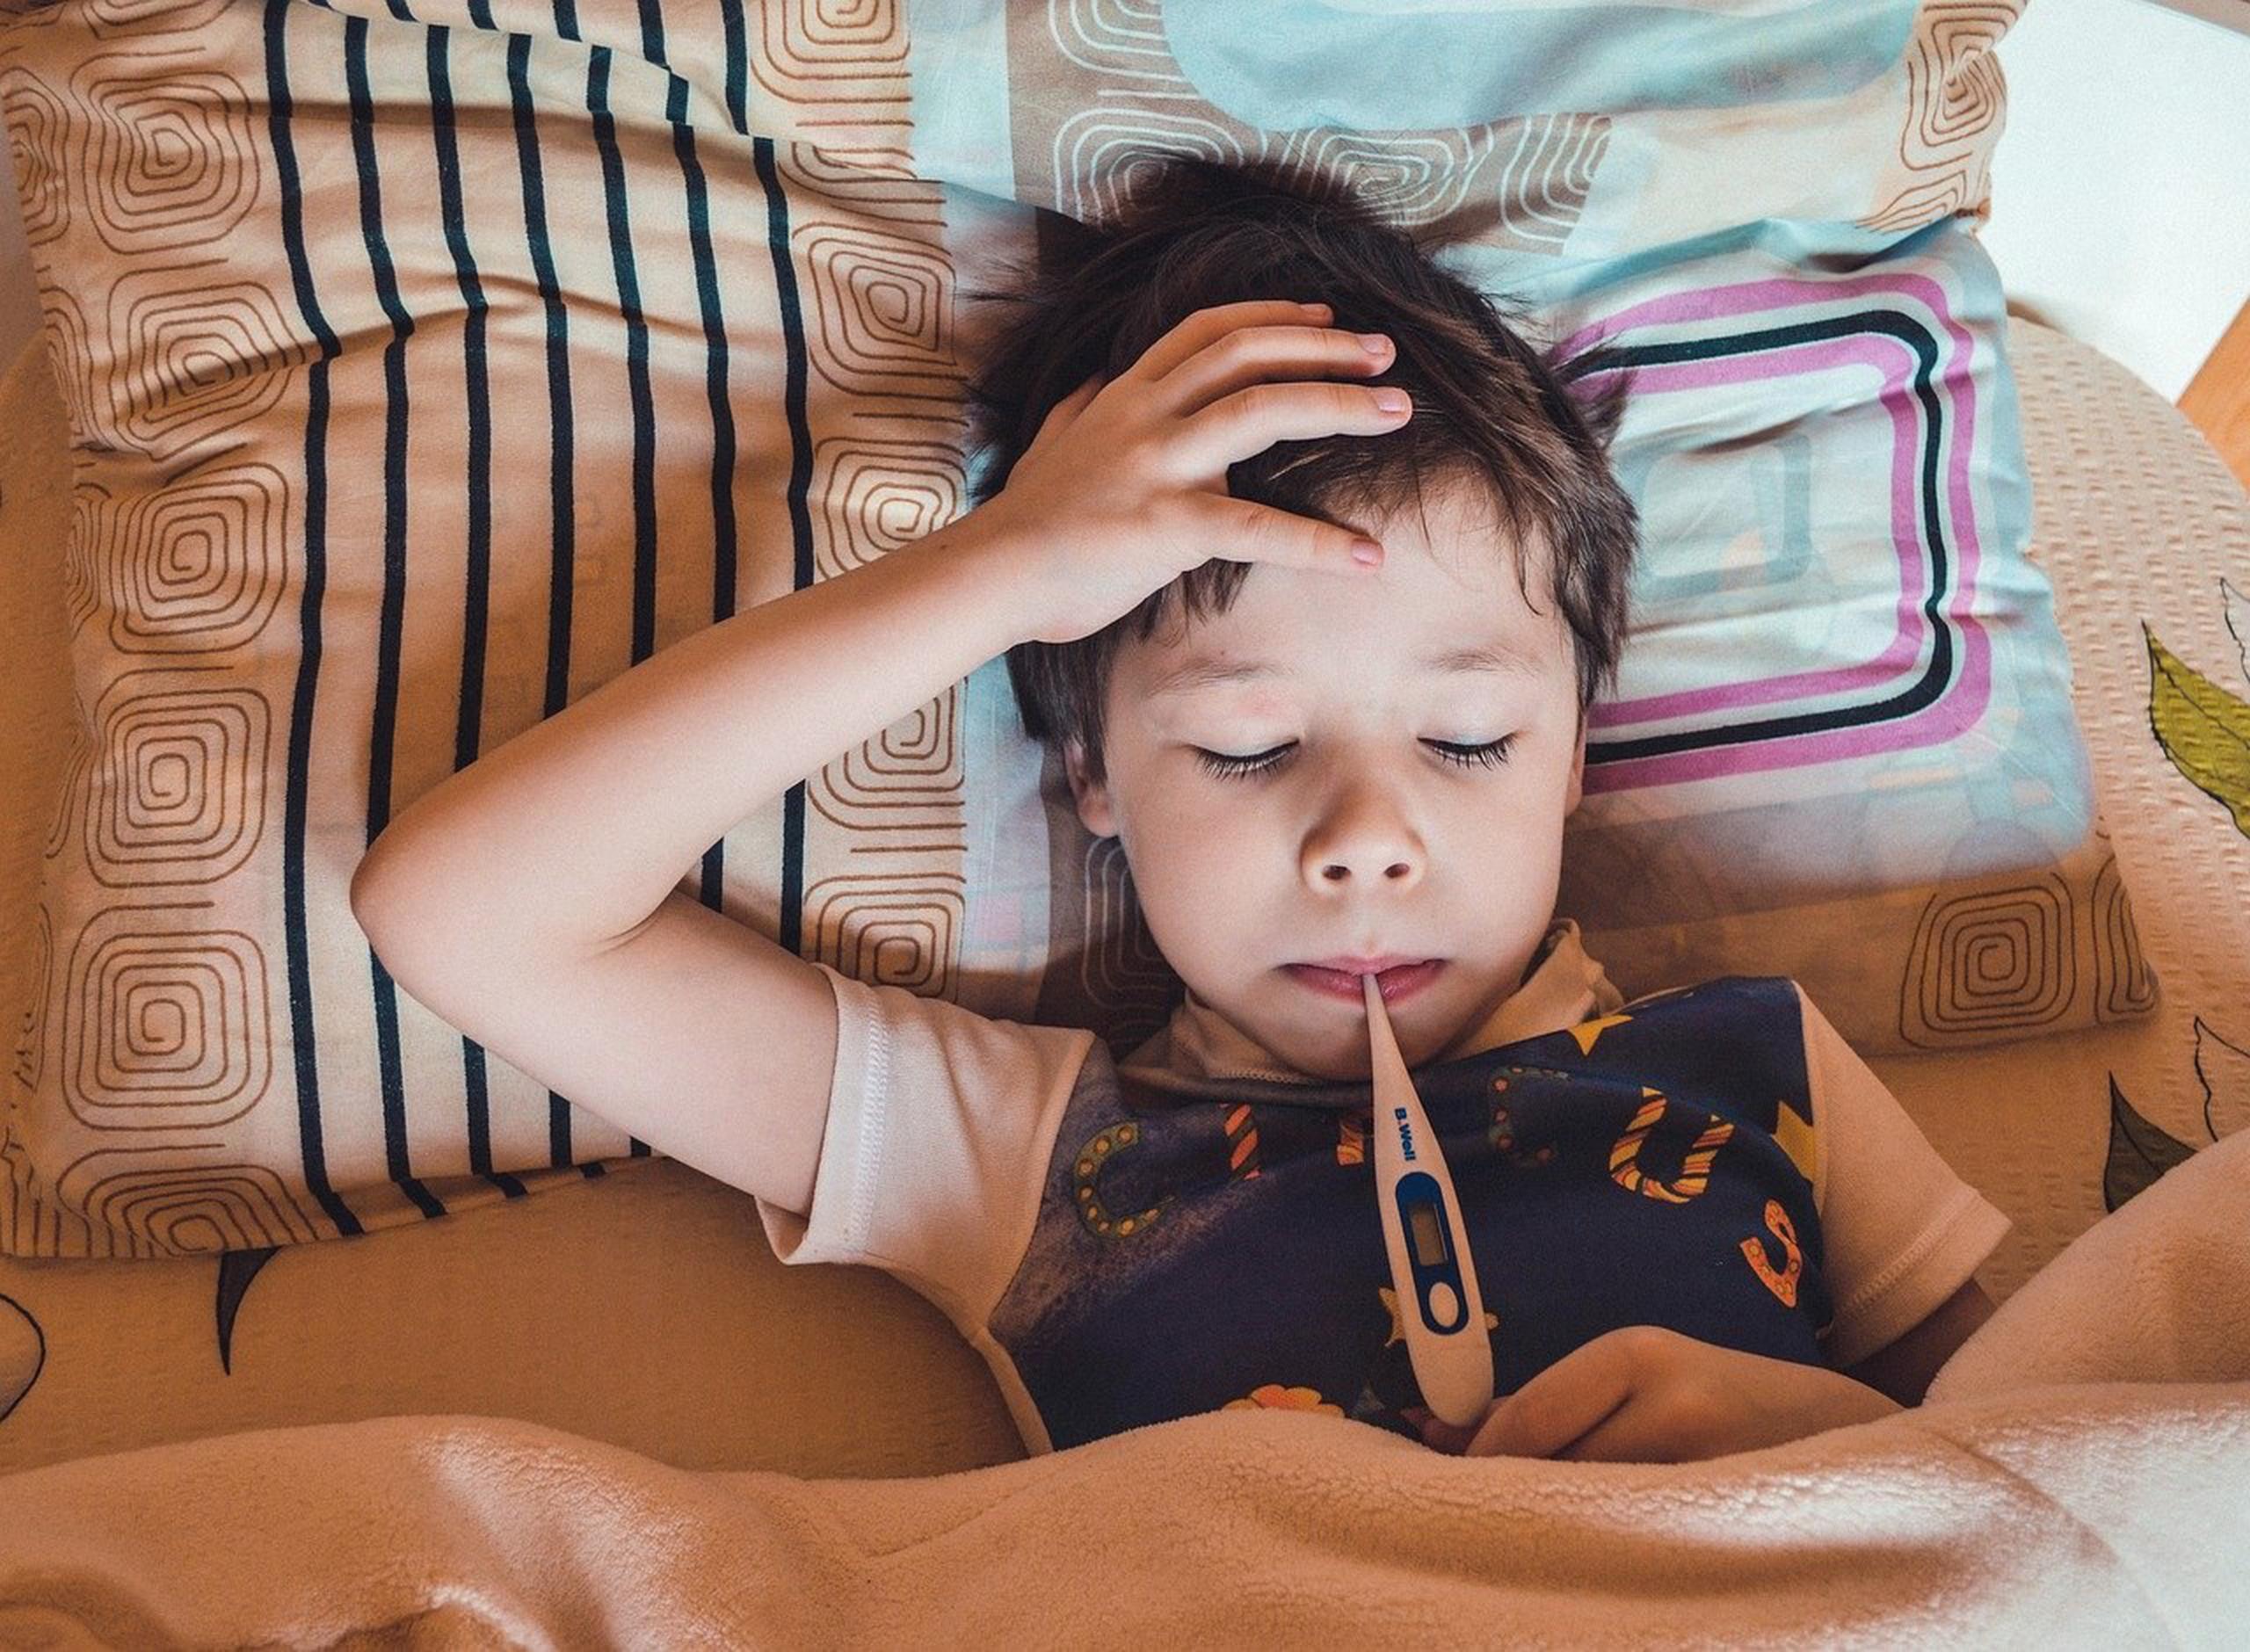 El Síndrome Inflamatorio Multisistémico afecta principalmente a niños y jóvenes y puede presentarse durante la fase aguda de COVID-19. (Pixabay)